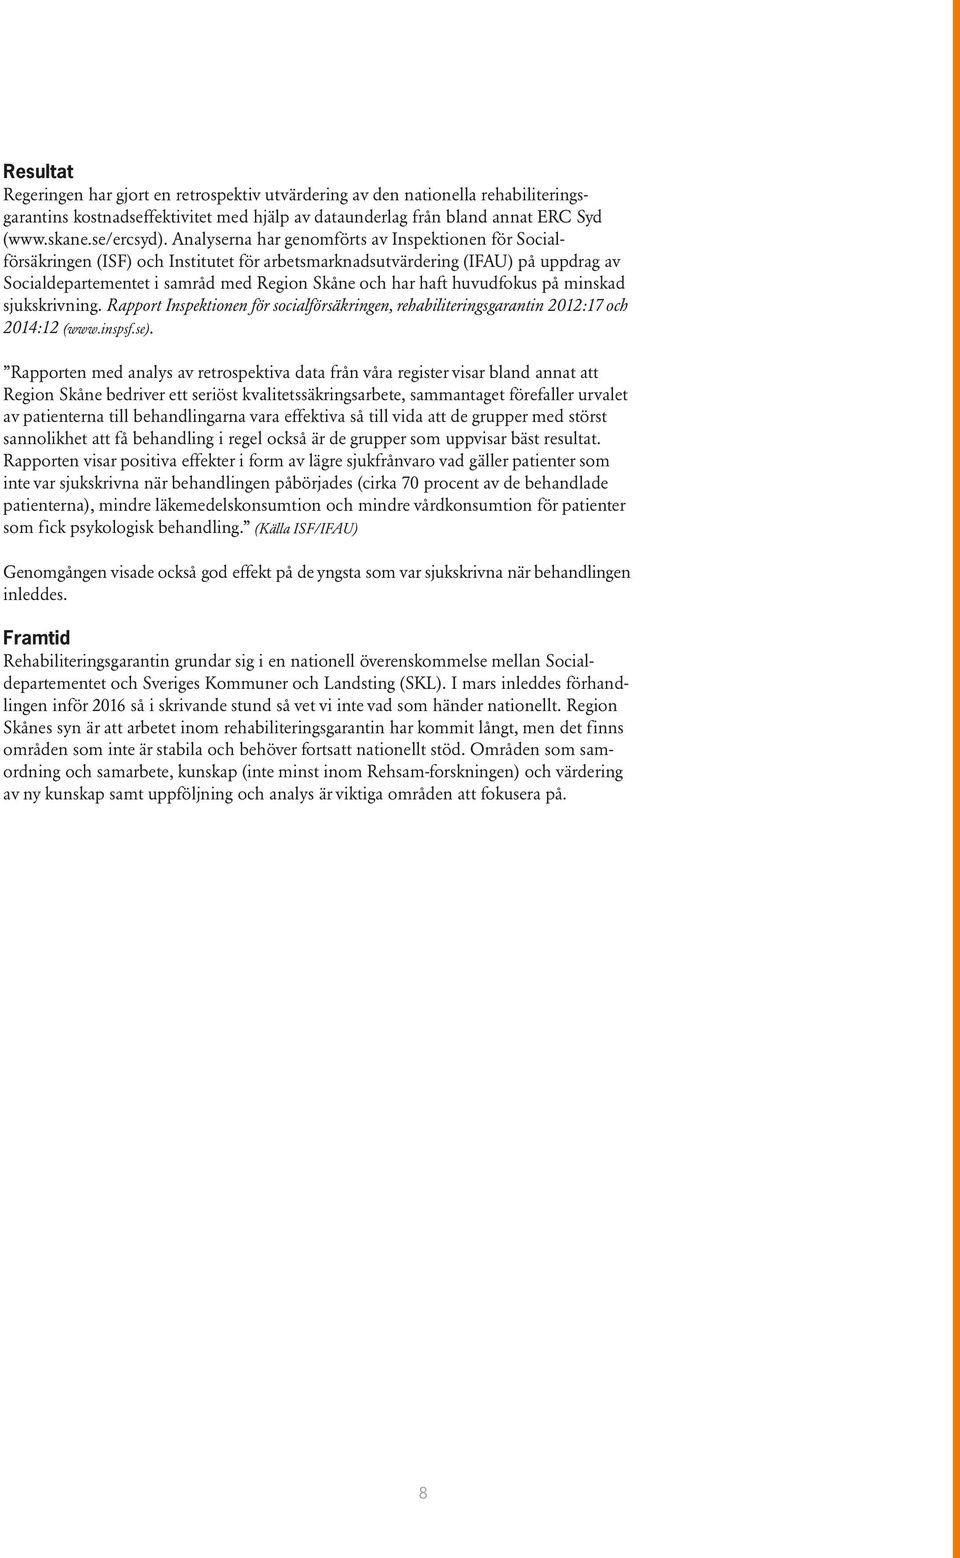 huvudfokus på minskad sjukskrivning. Rapport Inspektionen för socialförsäkringen, rehabiliteringsgarantin 2012:17 och 2014:12 (www.inspsf.se).